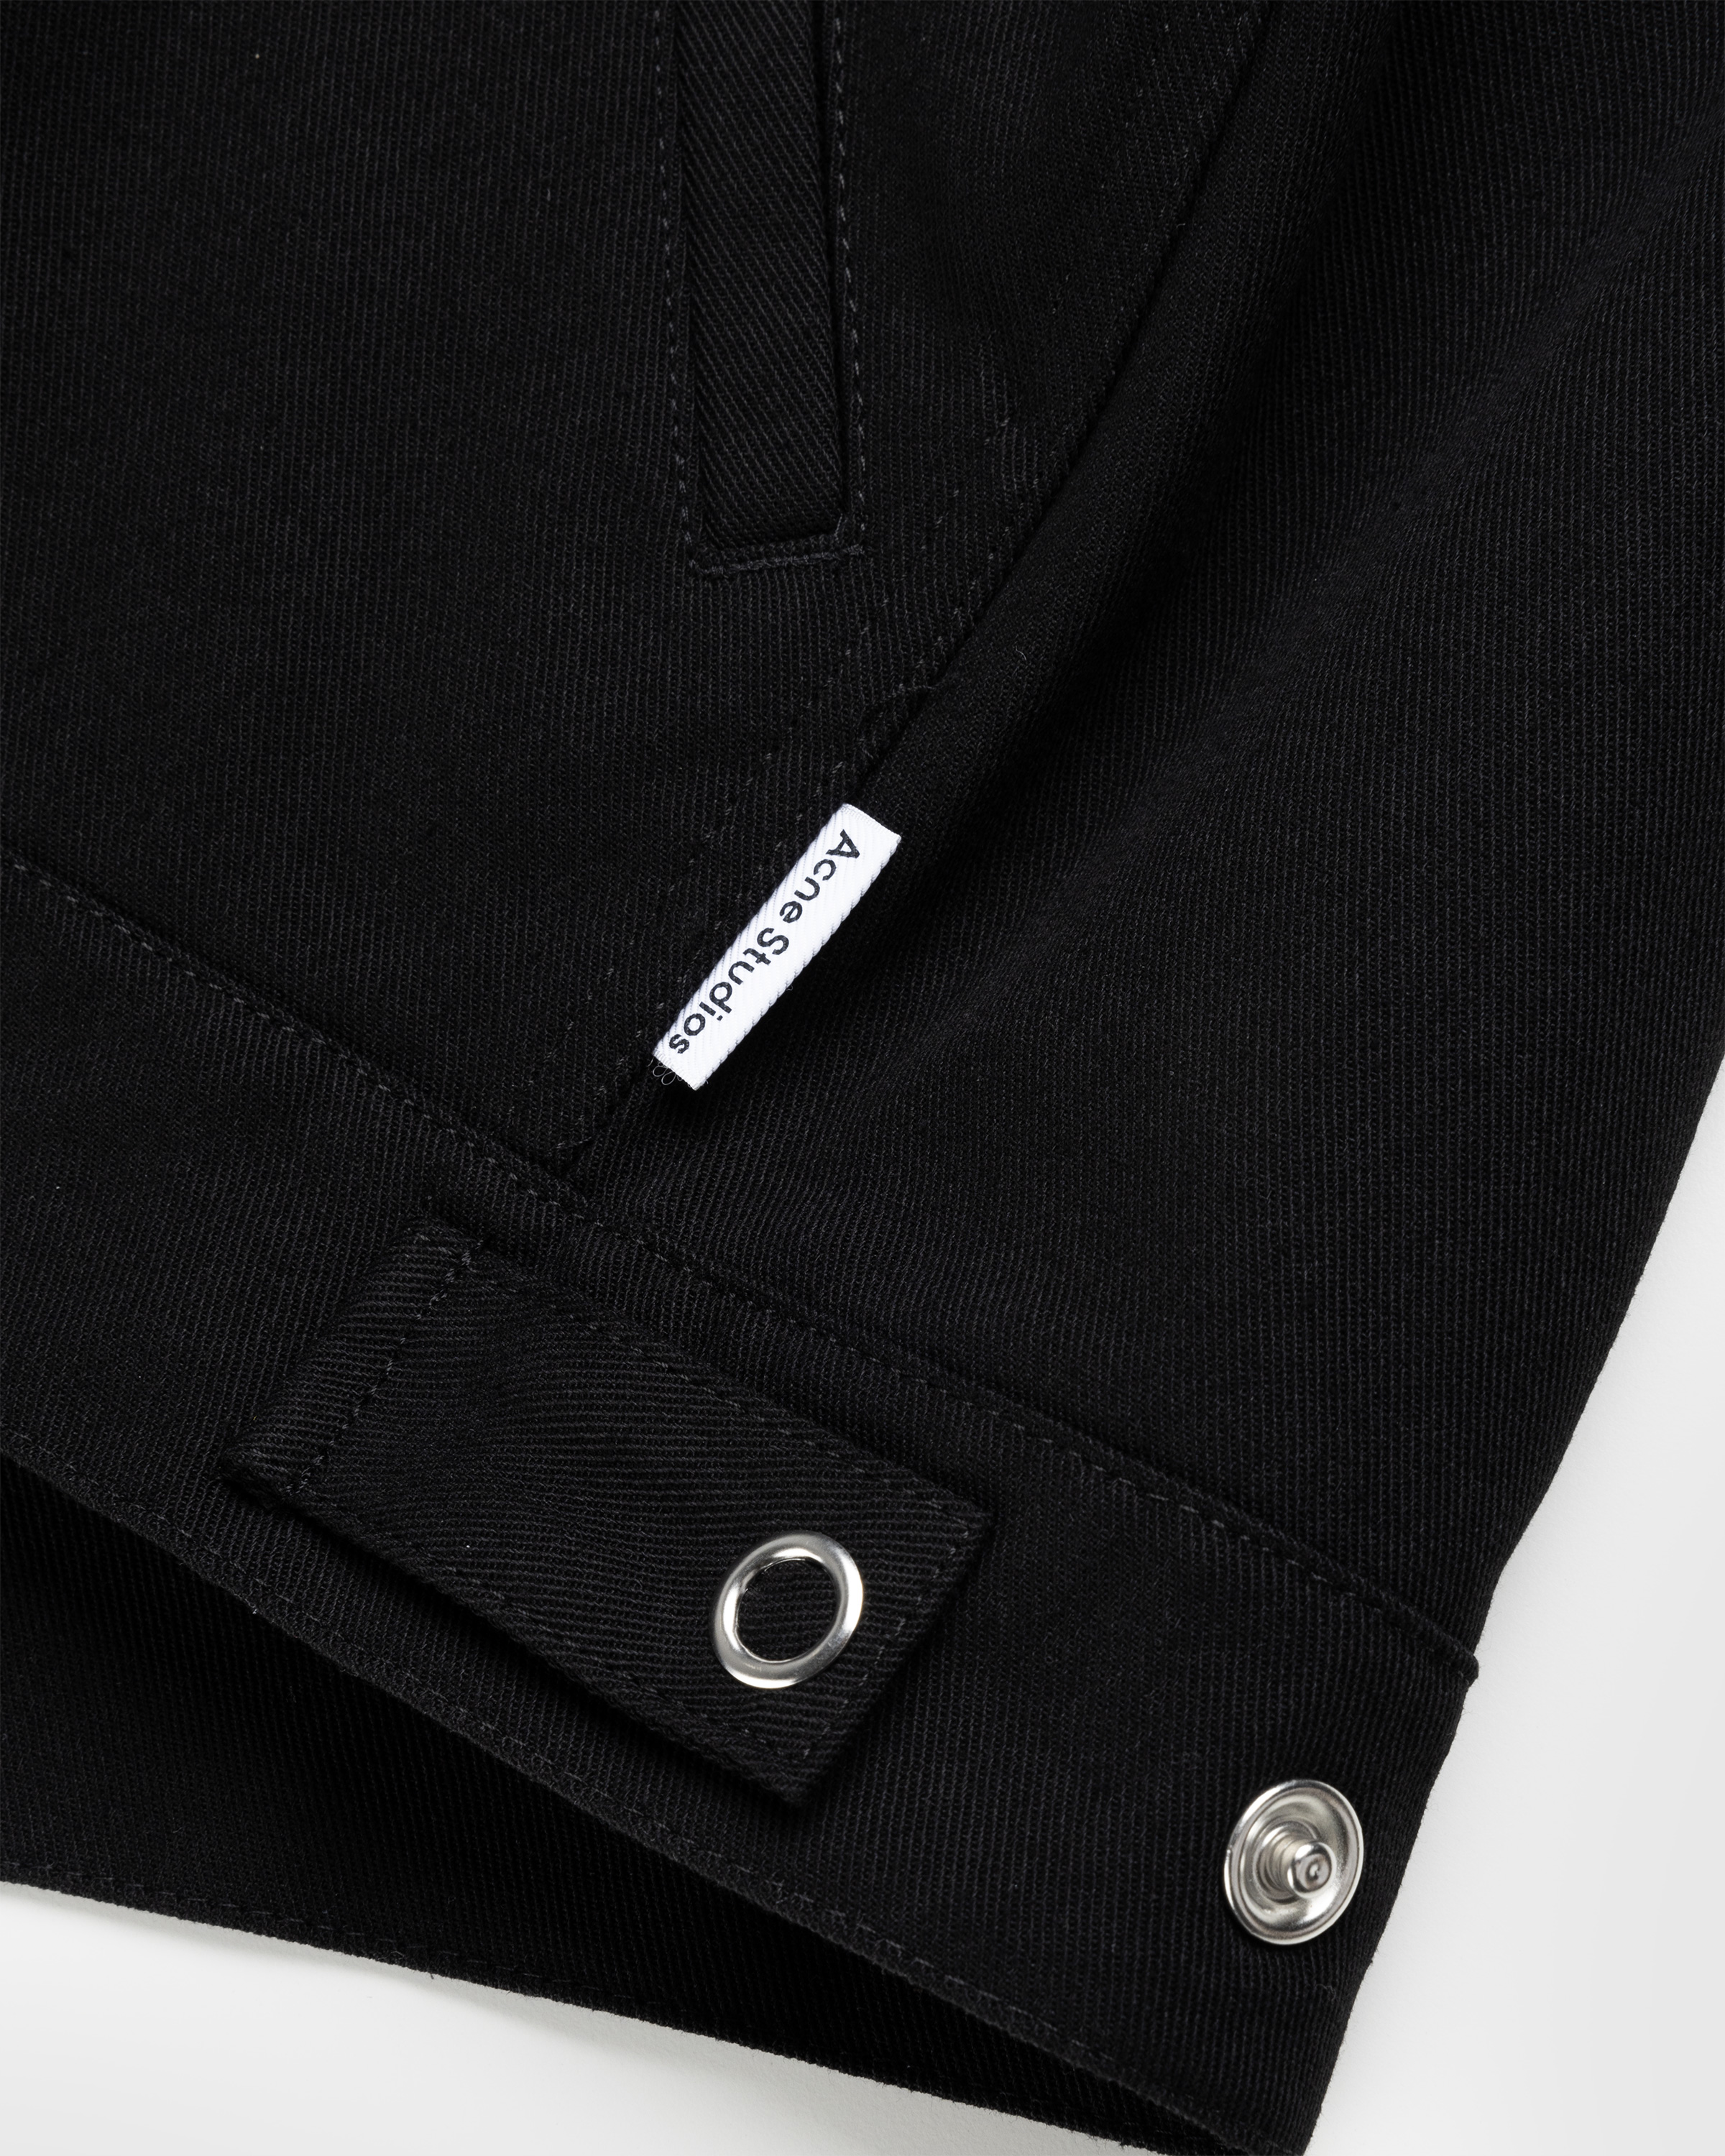 Acne Studios - Twill Jacket Black - Clothing - Black - Image 7